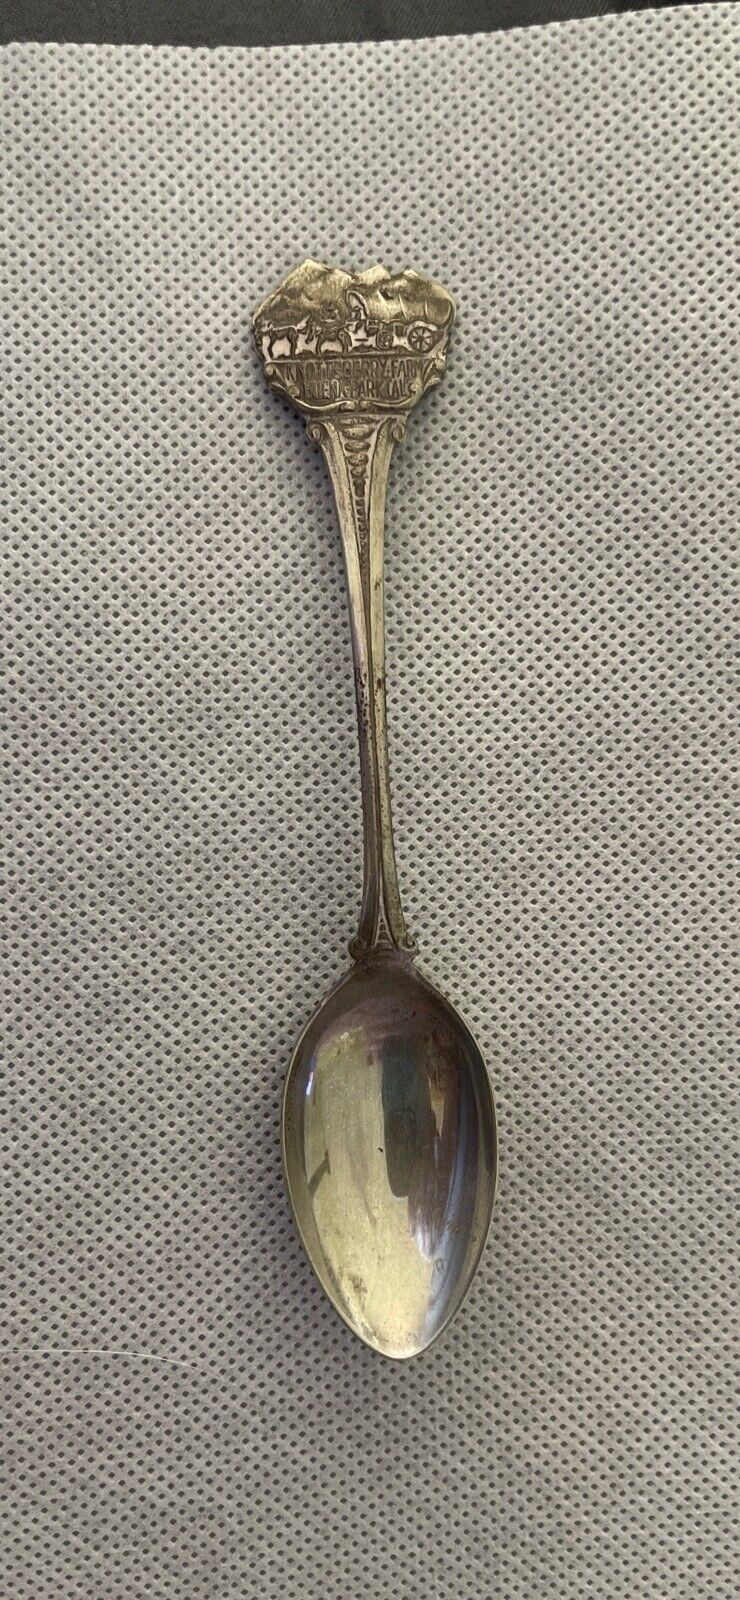 Knots berry farm vintage souvenir Spoon